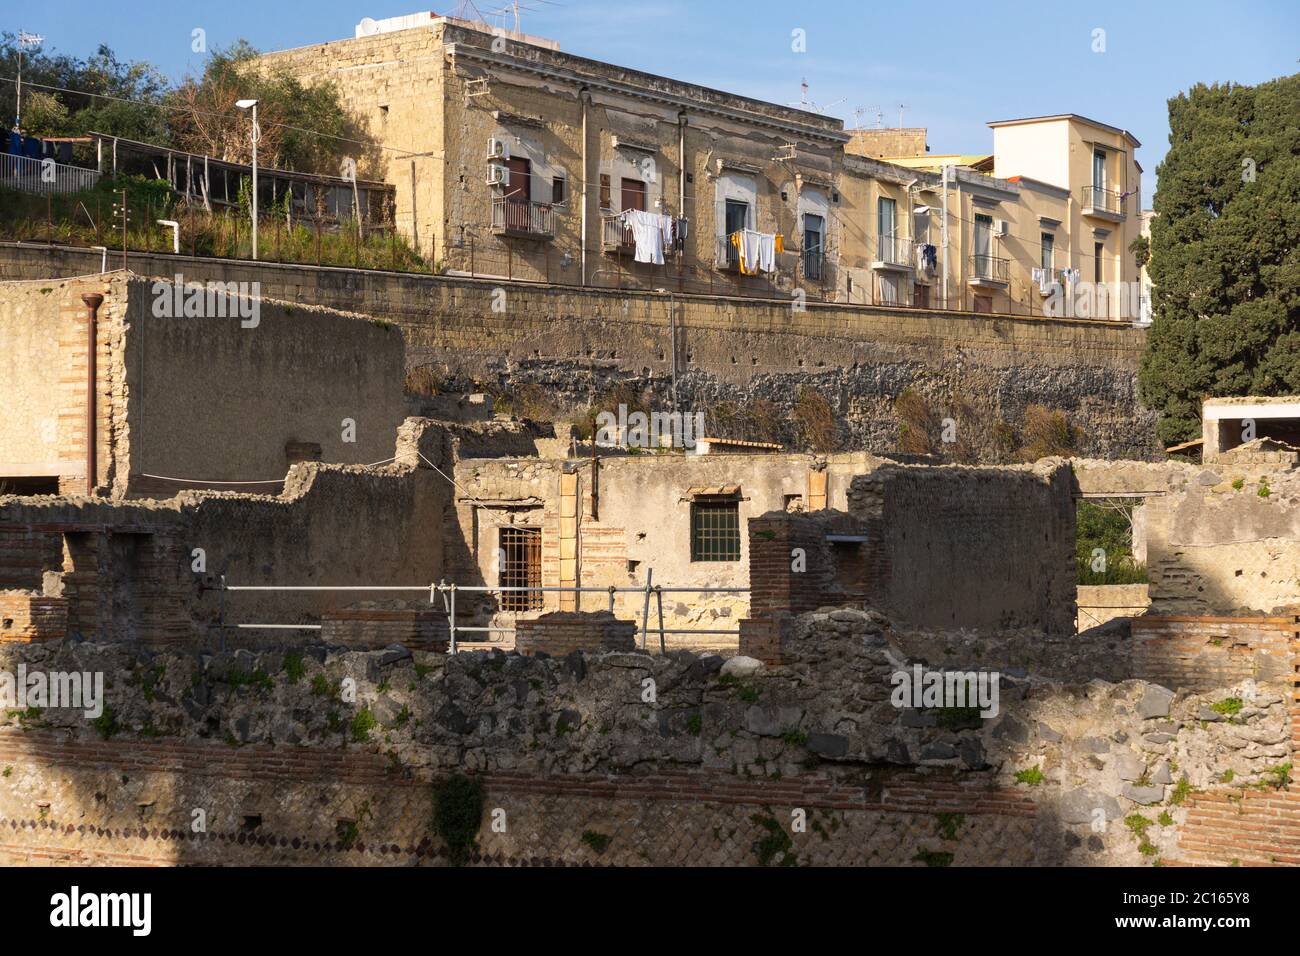 Die antiken römischen Ruinen von Herculaneum (unten) sind den modernen Gebäuden (oben) der italienischen Stadt Ercolano außerordentlich ähnlich Stockfoto